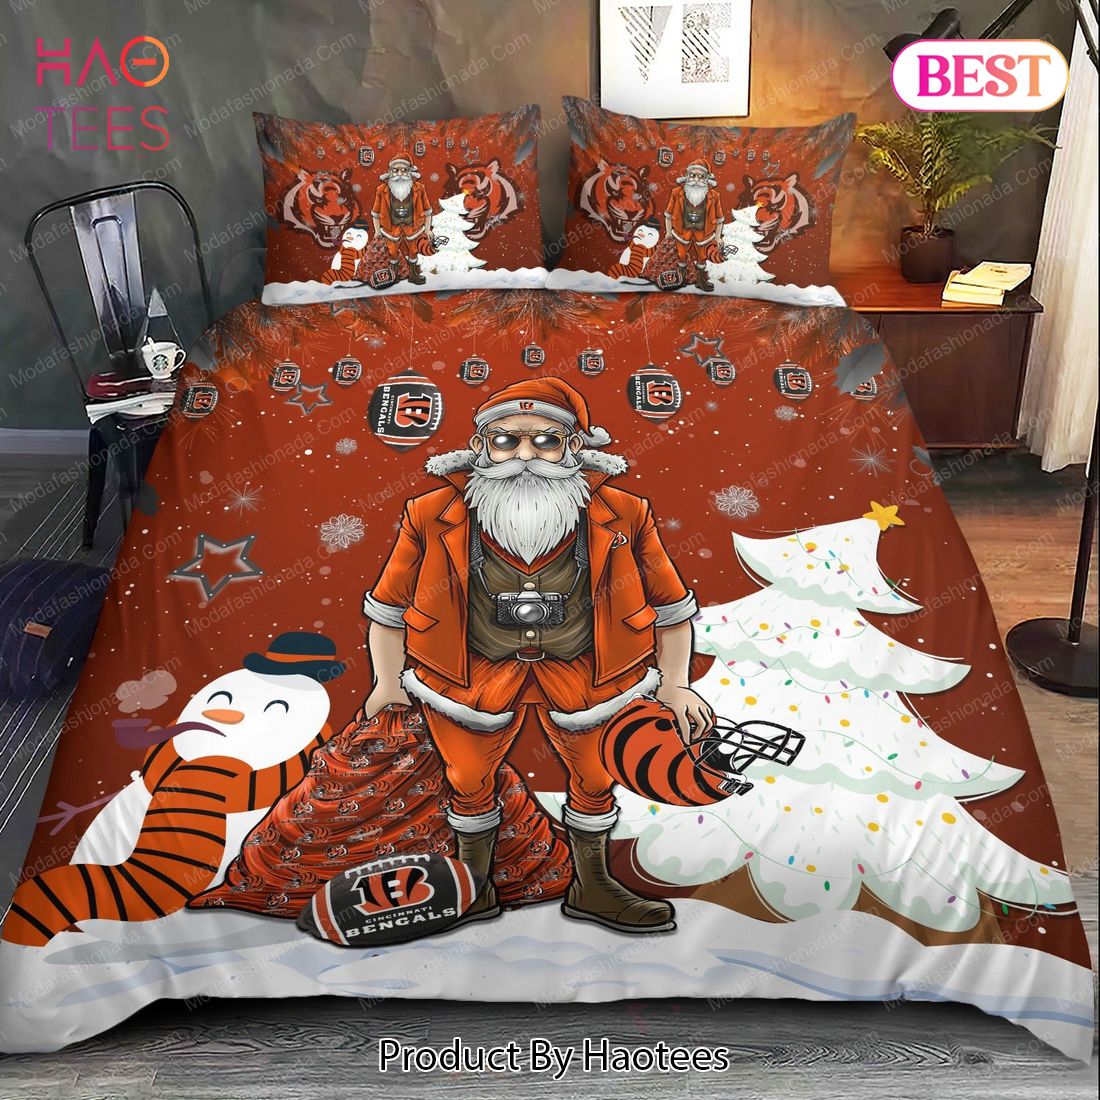 Buy Cincinnati Bengals Christmas Santa Claus Bedding Sets Bed Sets, Bedroom Sets, Comforter Sets, Duvet Cover, Bedspread